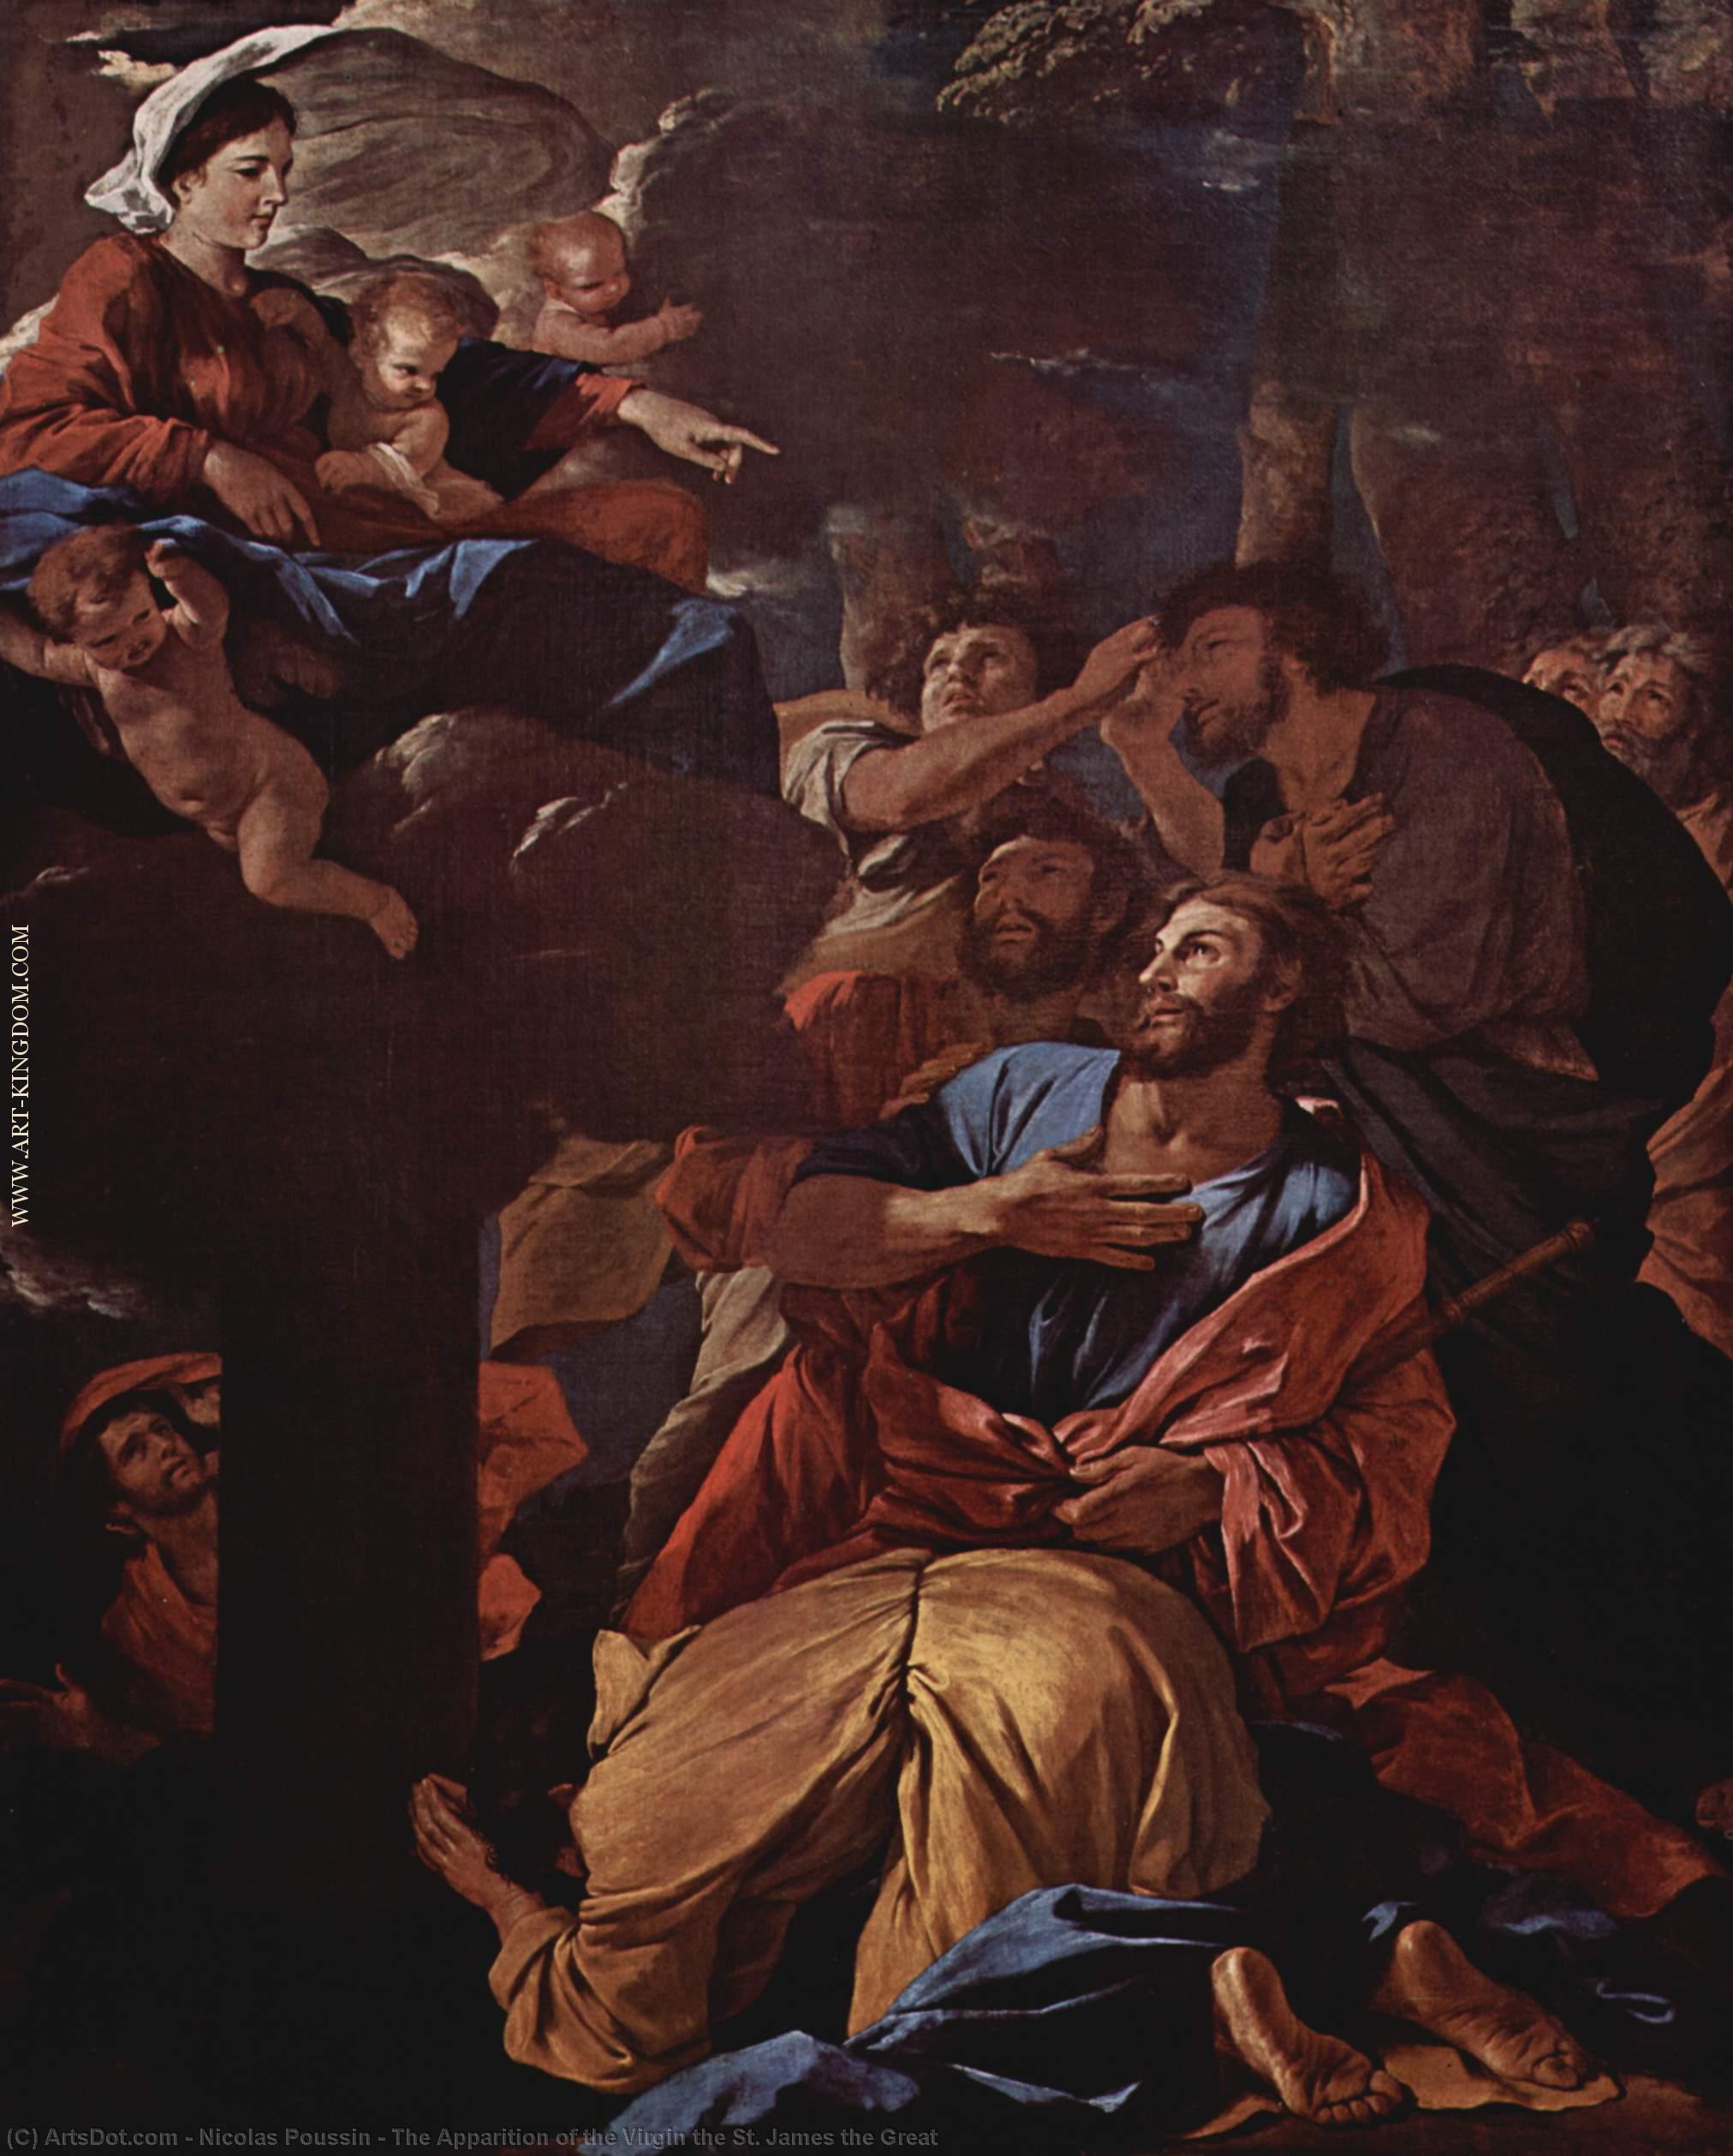 WikiOO.org - Енциклопедия за изящни изкуства - Живопис, Произведения на изкуството Nicolas Poussin - The Apparition of the Virgin the St. James the Great